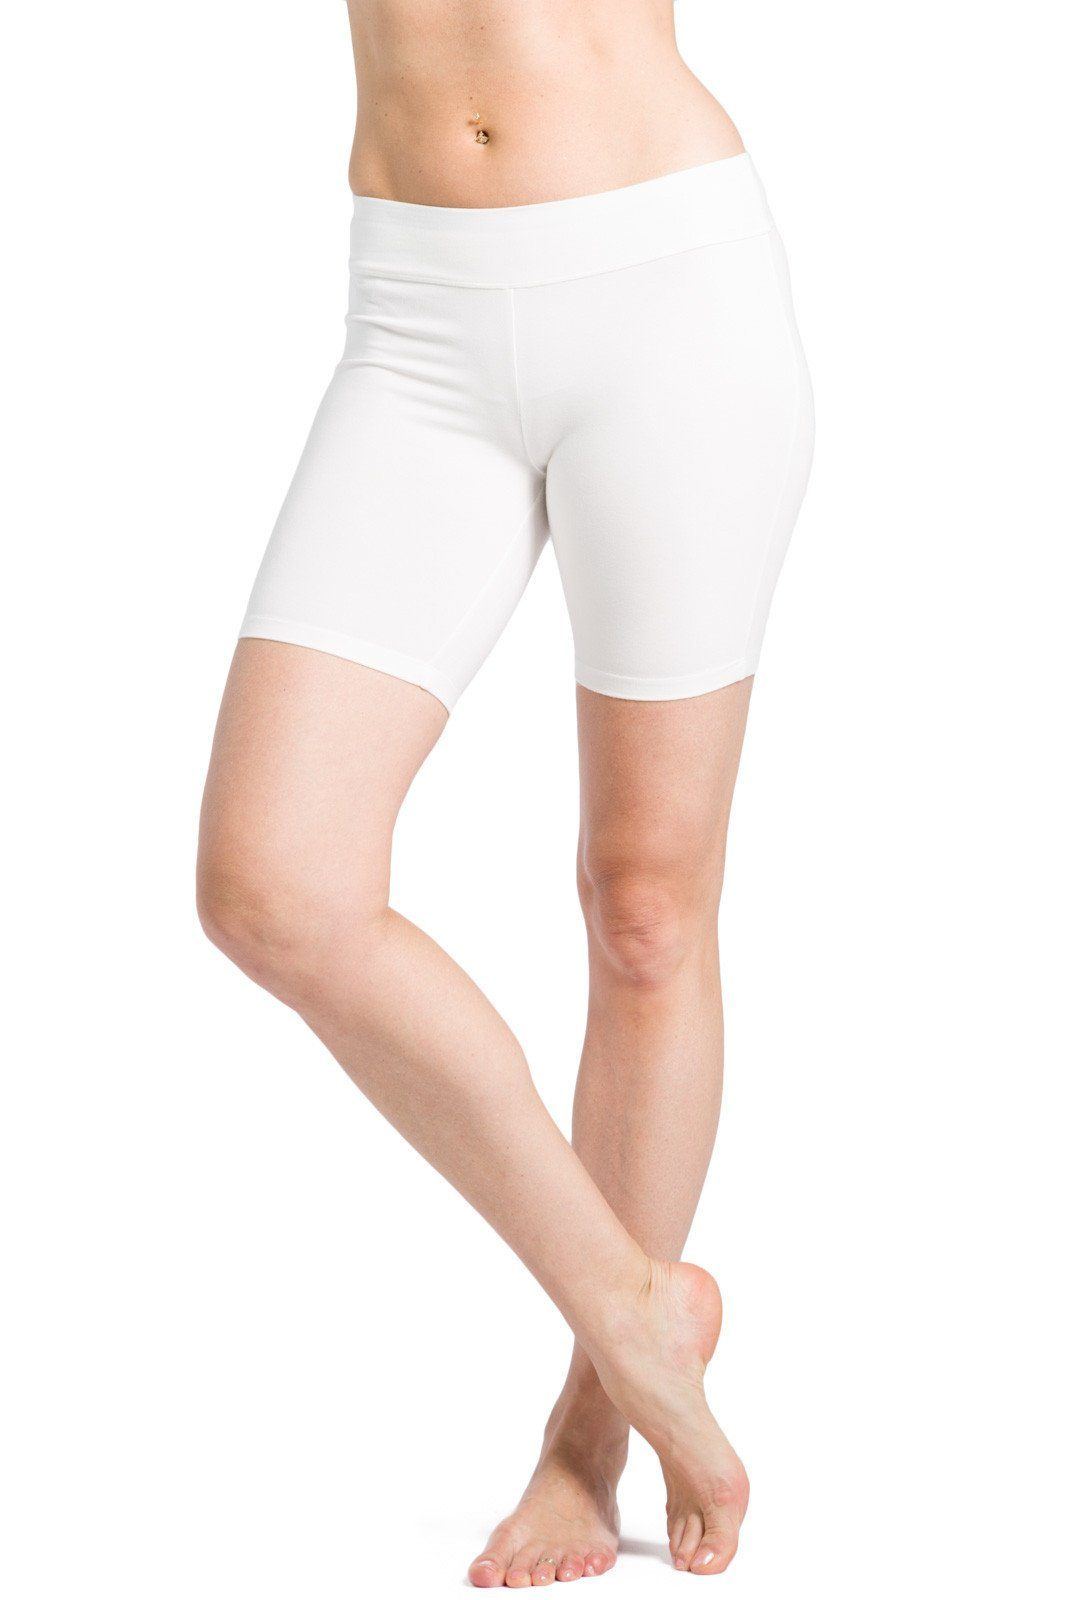 Linen Pants Womens Summer Gym Leggings Short Leggings Knee Length Leggings  Non See Through Shorts Fashion LeggingsWorkout Leggings for Women White